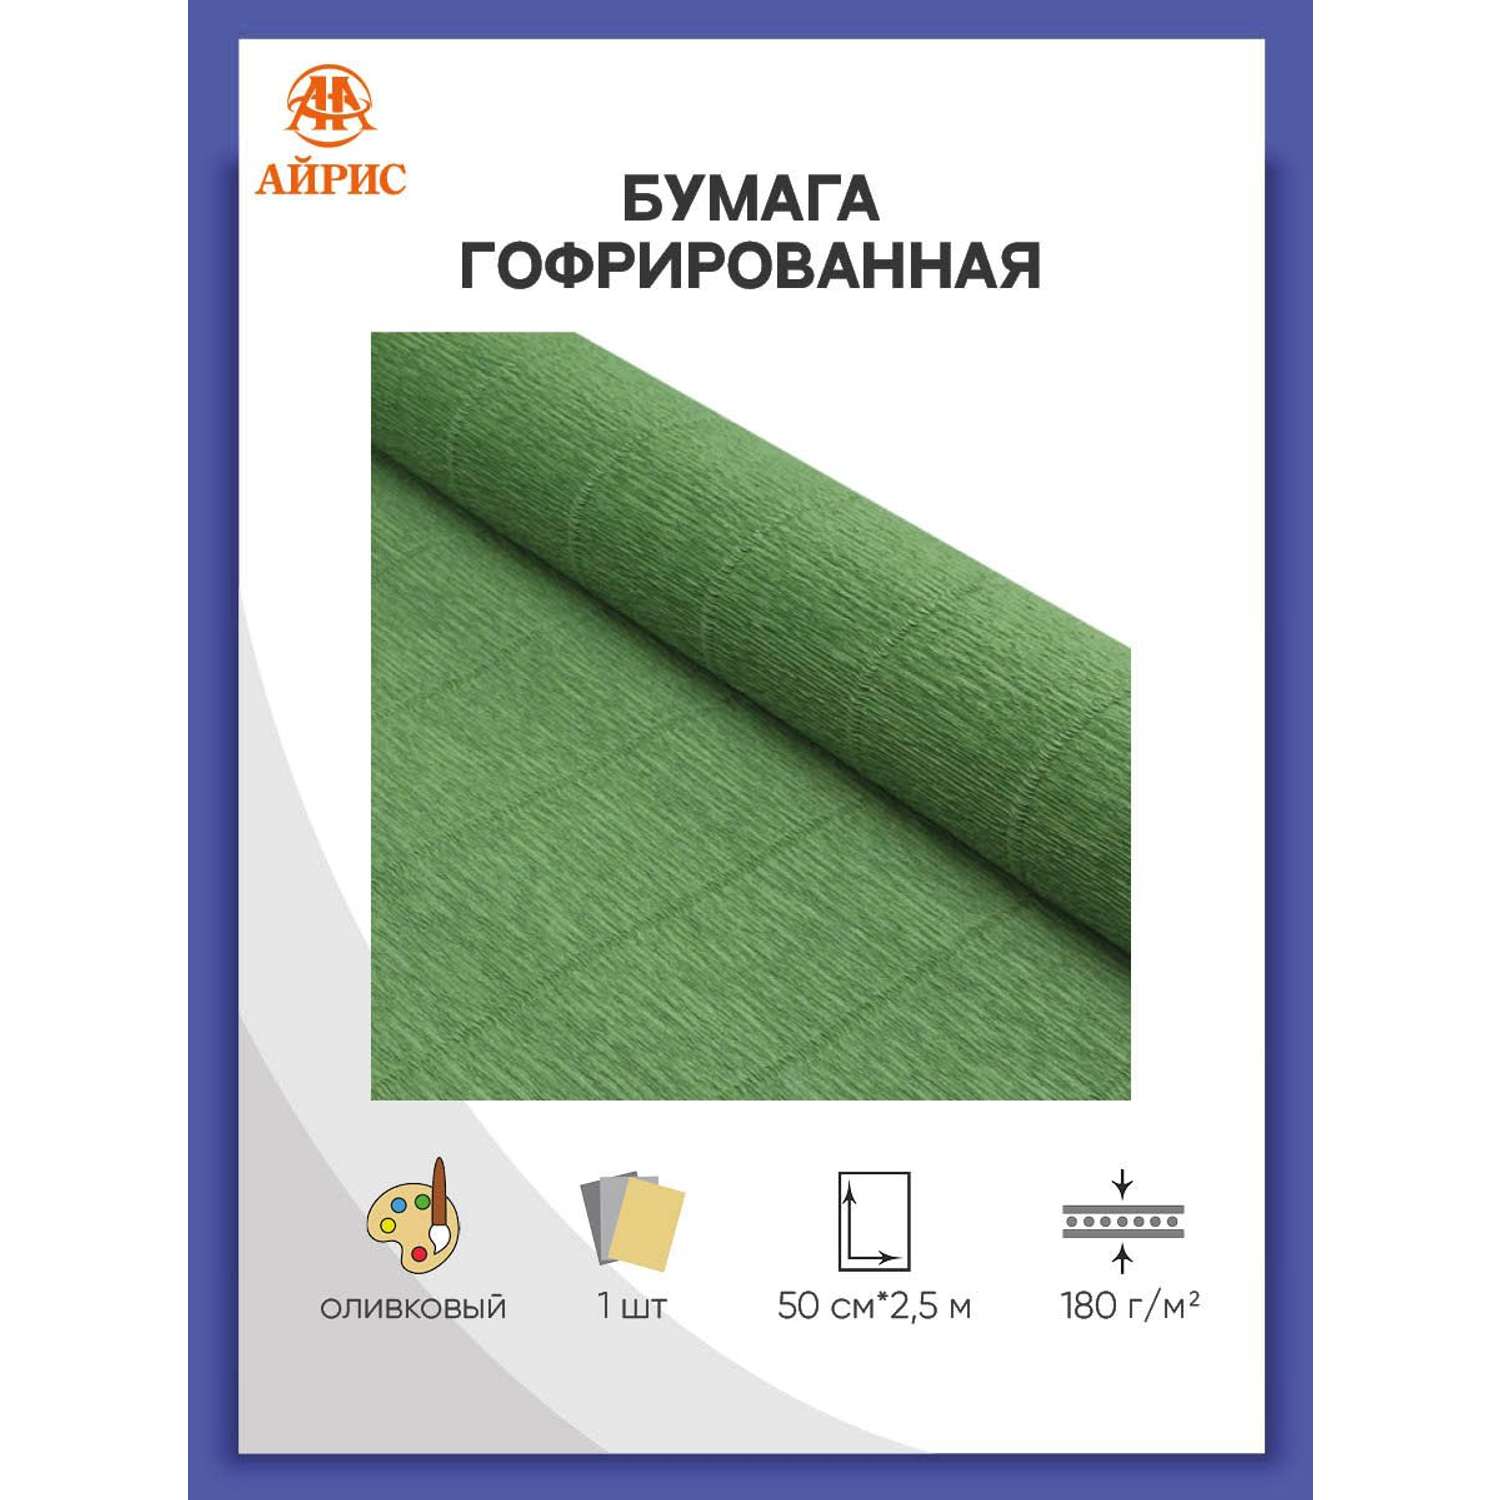 Бумага Айрис гофрированная креповая для творчества 50 см х 2.5 м 180 г оливковый - фото 1